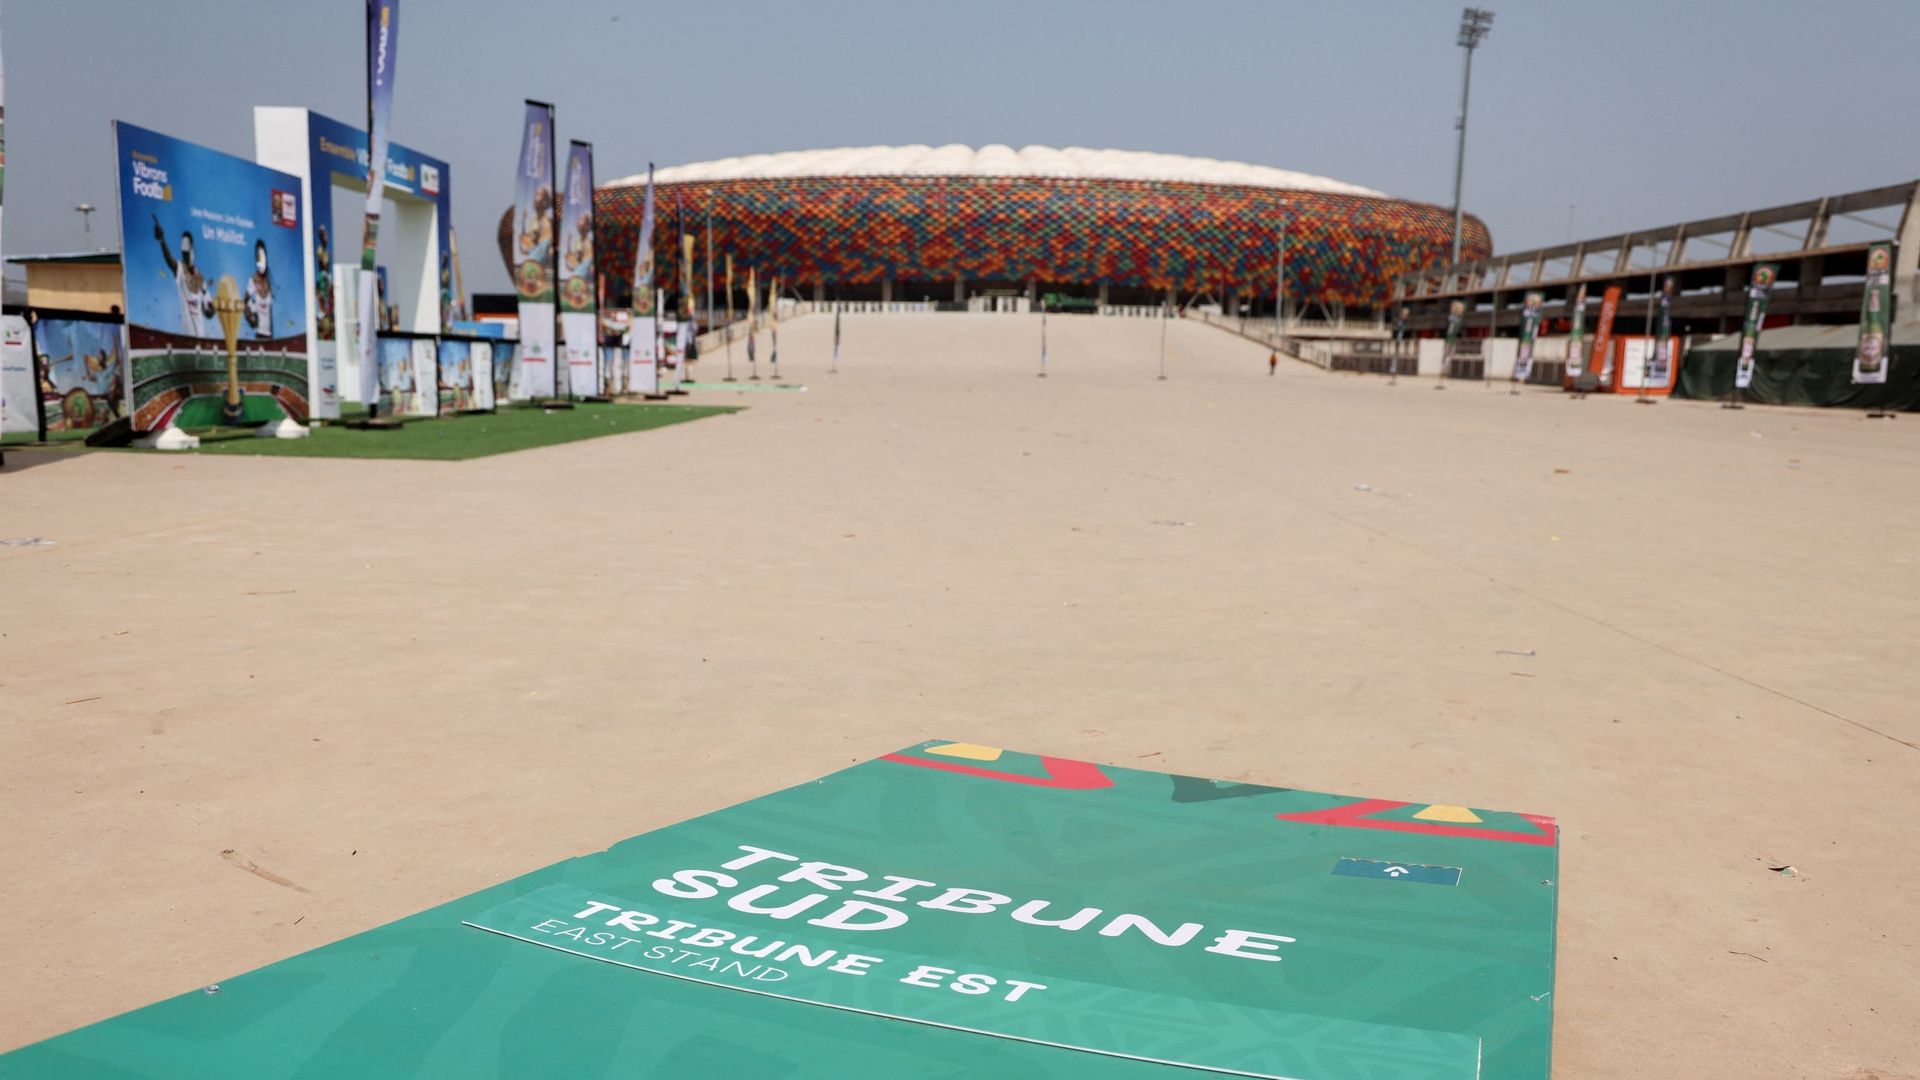 Coupe d’Afrique des Nations : La bousculade mortelle due à l’ouverture "imprudente" d’une porte du stade